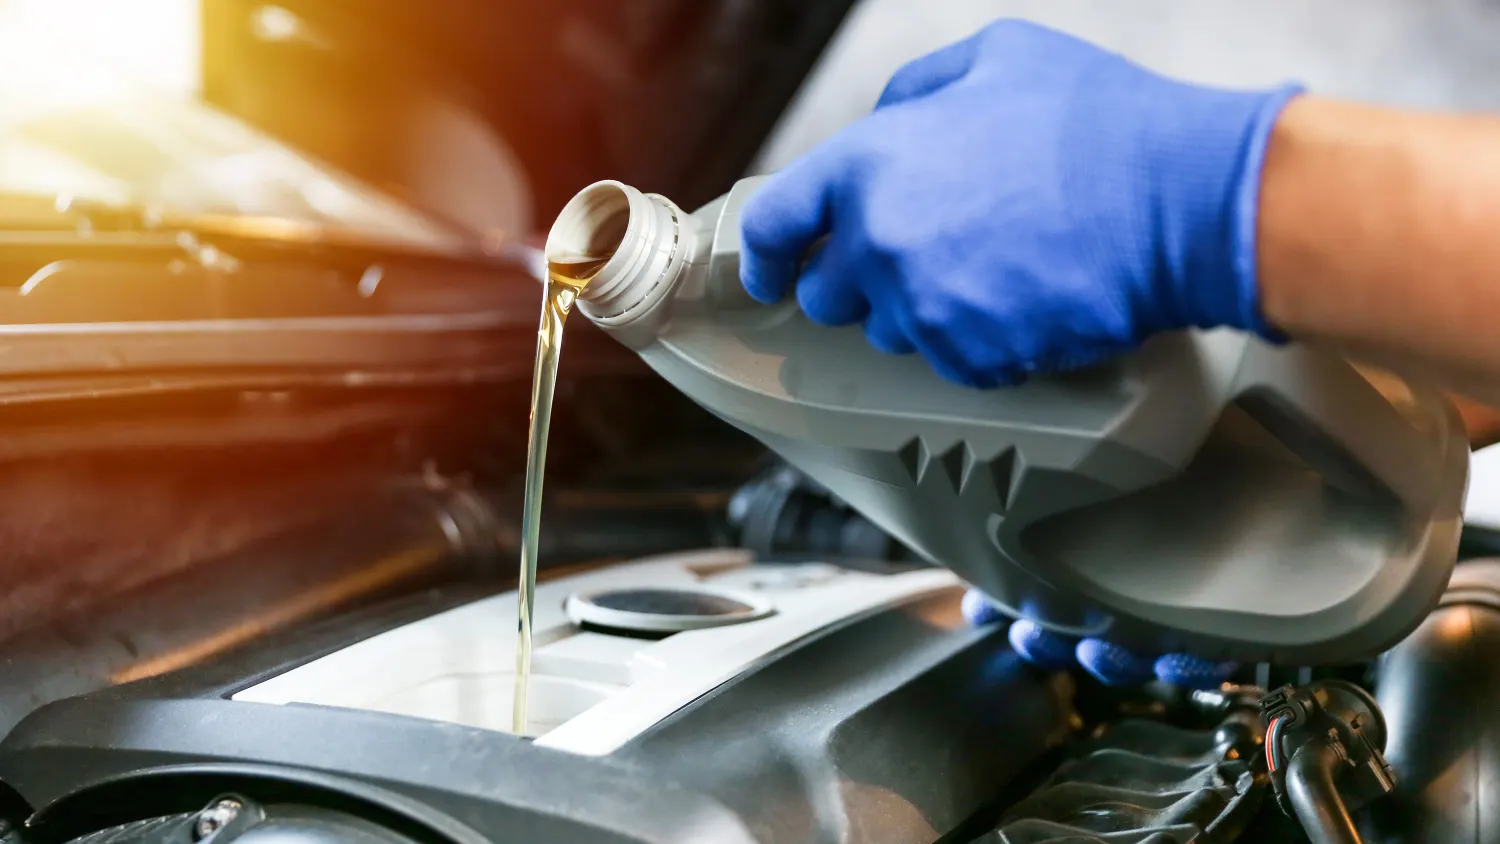 Auto-Öl nachfüllen - darauf sollten Sie achten - CHIP